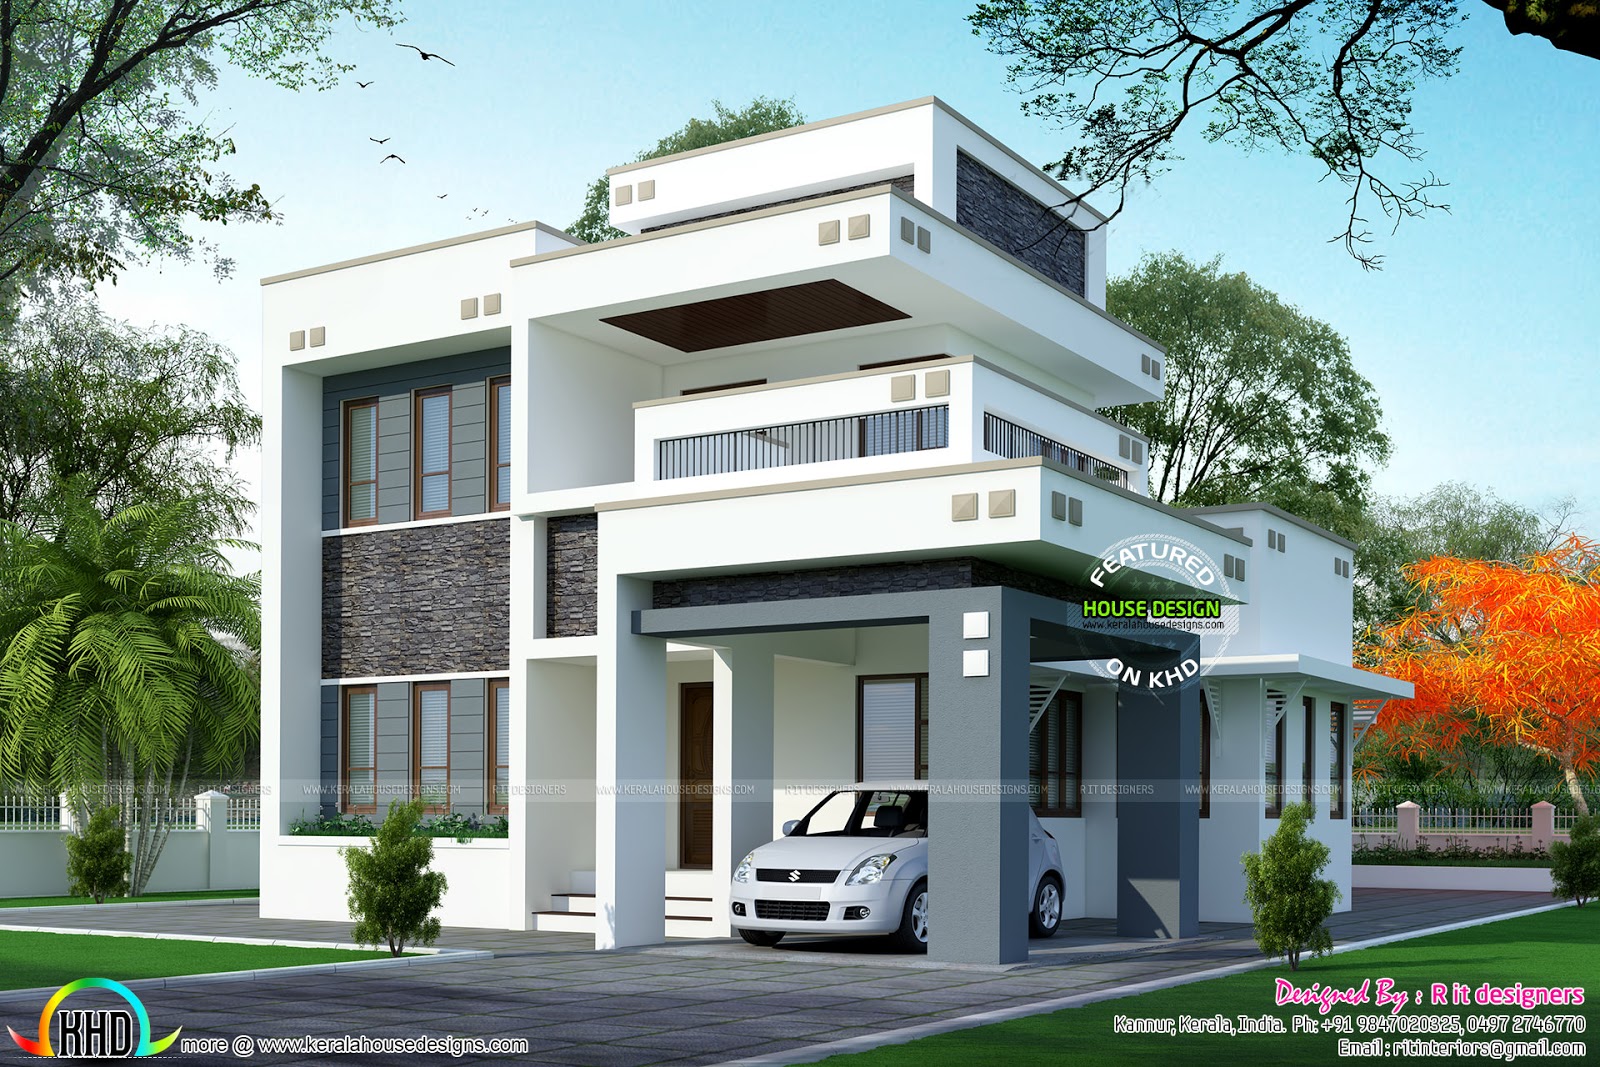 1800 sq-ft floor 3 bedroom home with floor plan - Kerala 